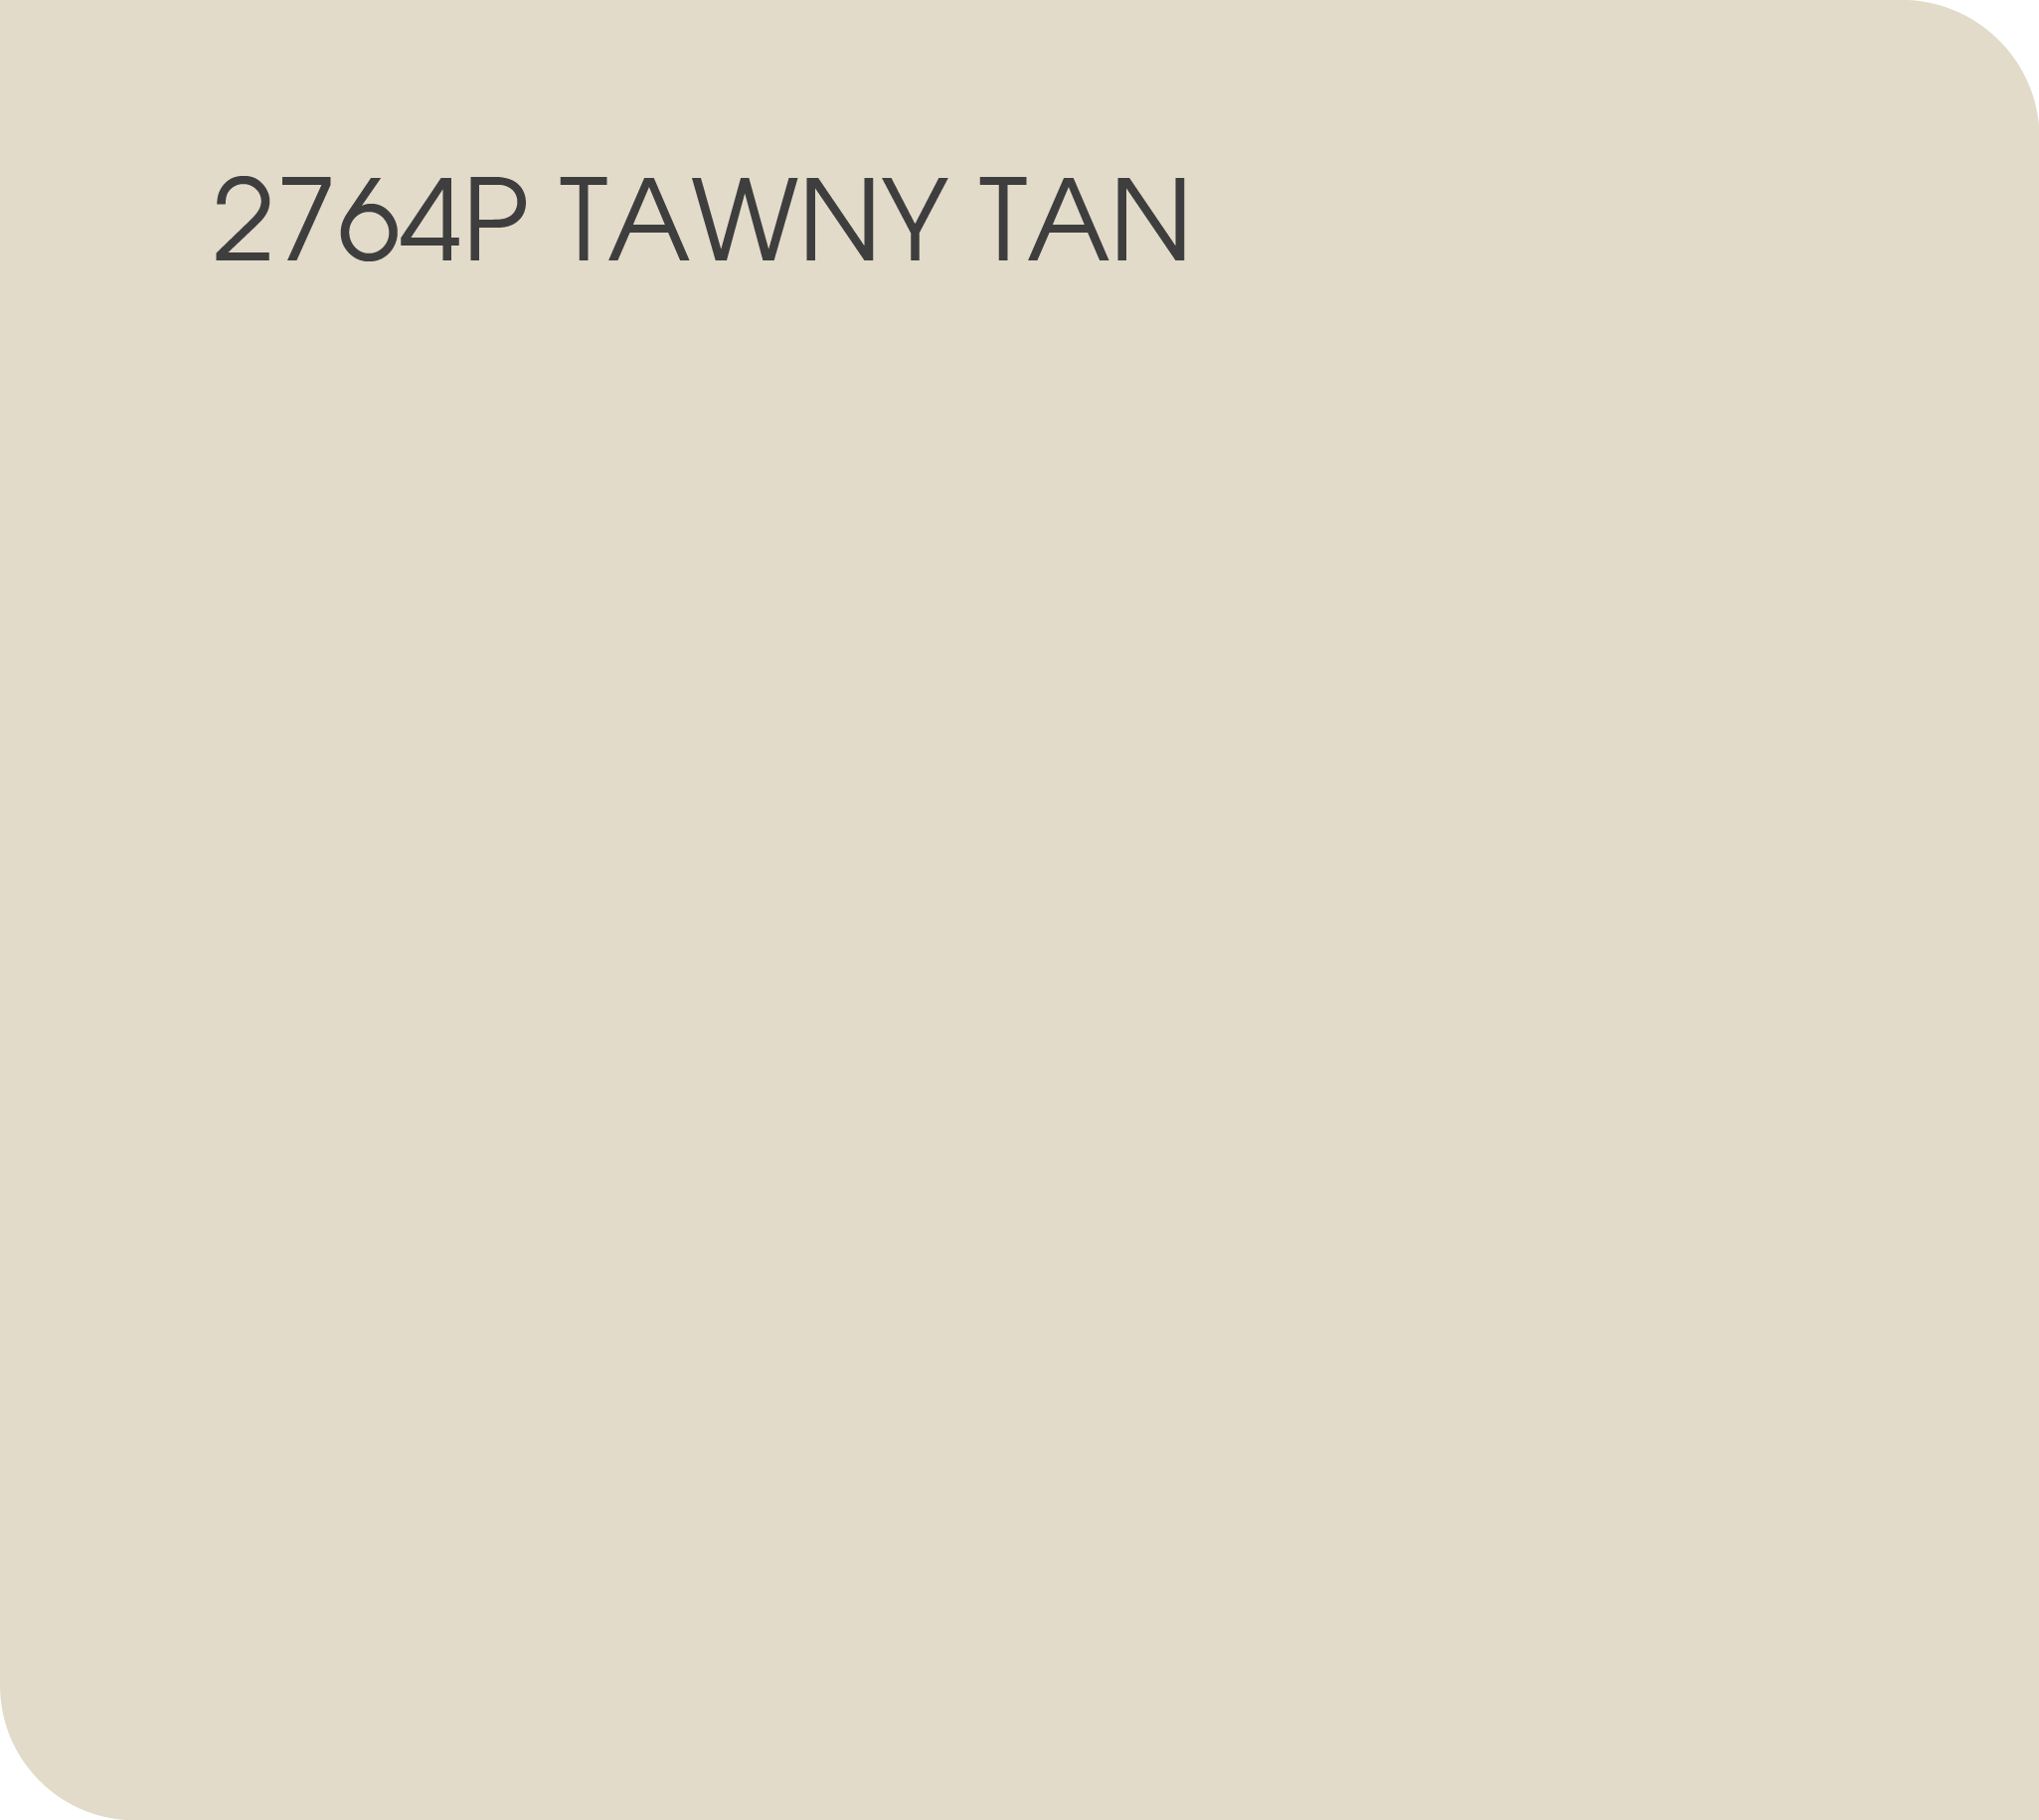 tawny tan